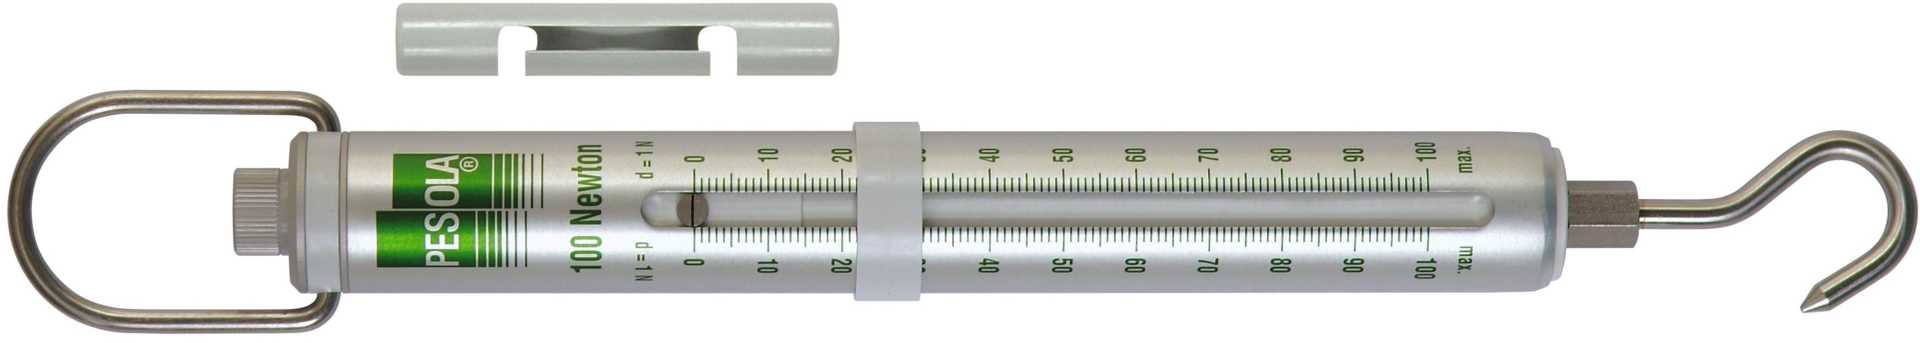 Kraftmesser PESOLA® mit N-Messkraftskala Abl. 0,02N Tol. +/-0,3% mit Haken Medio MB3N